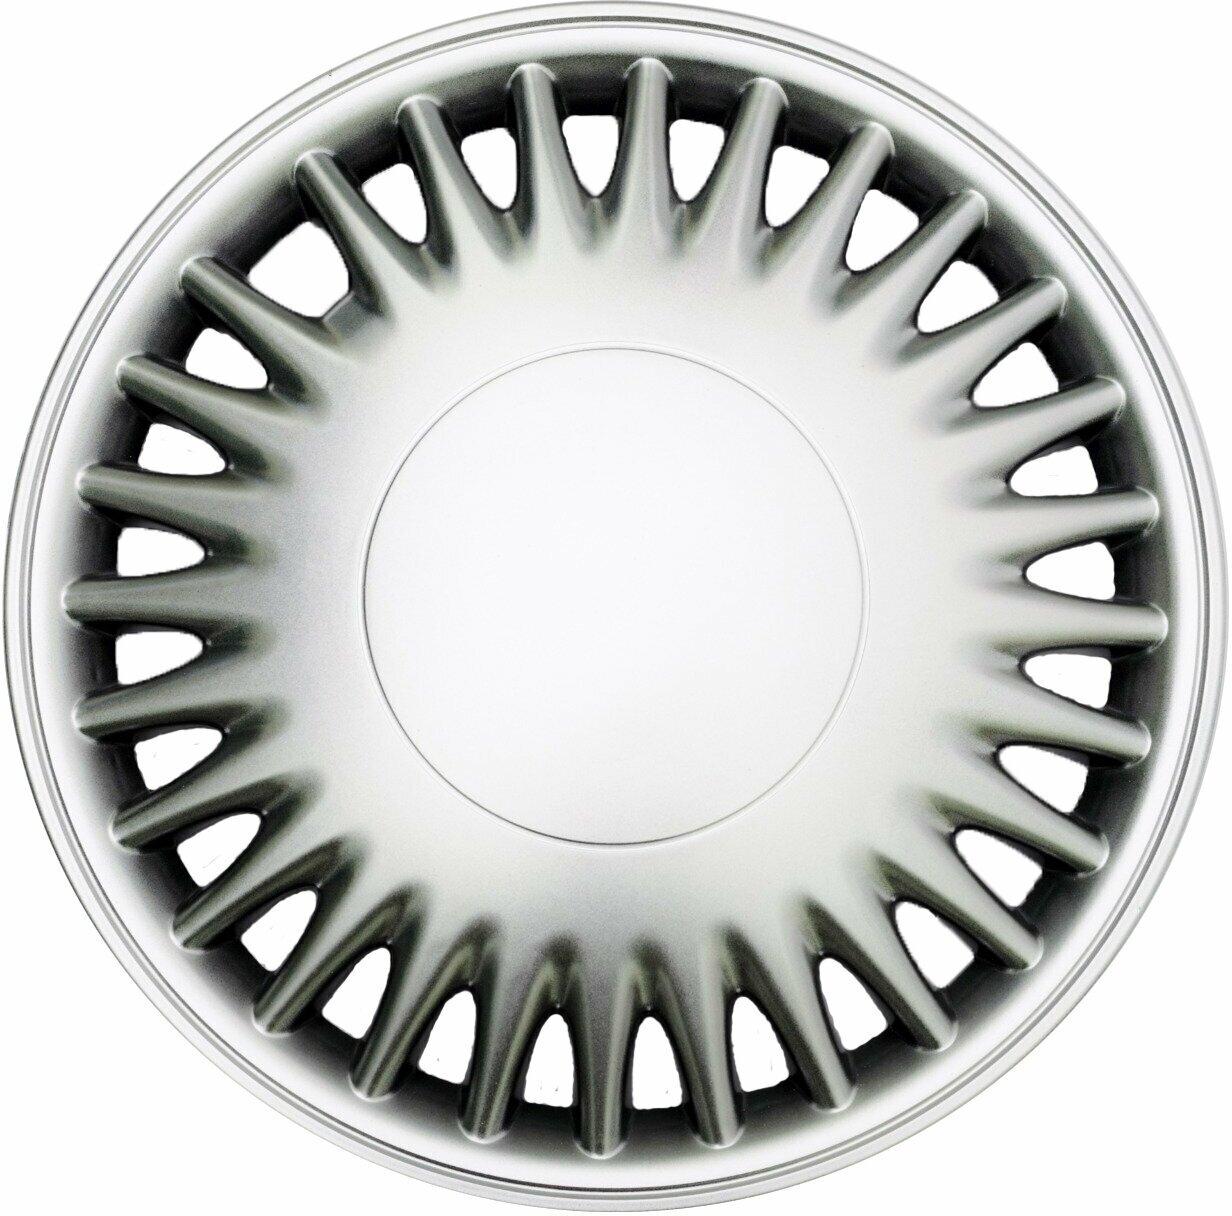 Колпаки на колеса STAR комаро R14 комплект 4шт на диски радиус 14 легковой авто цвет серый серебристый.